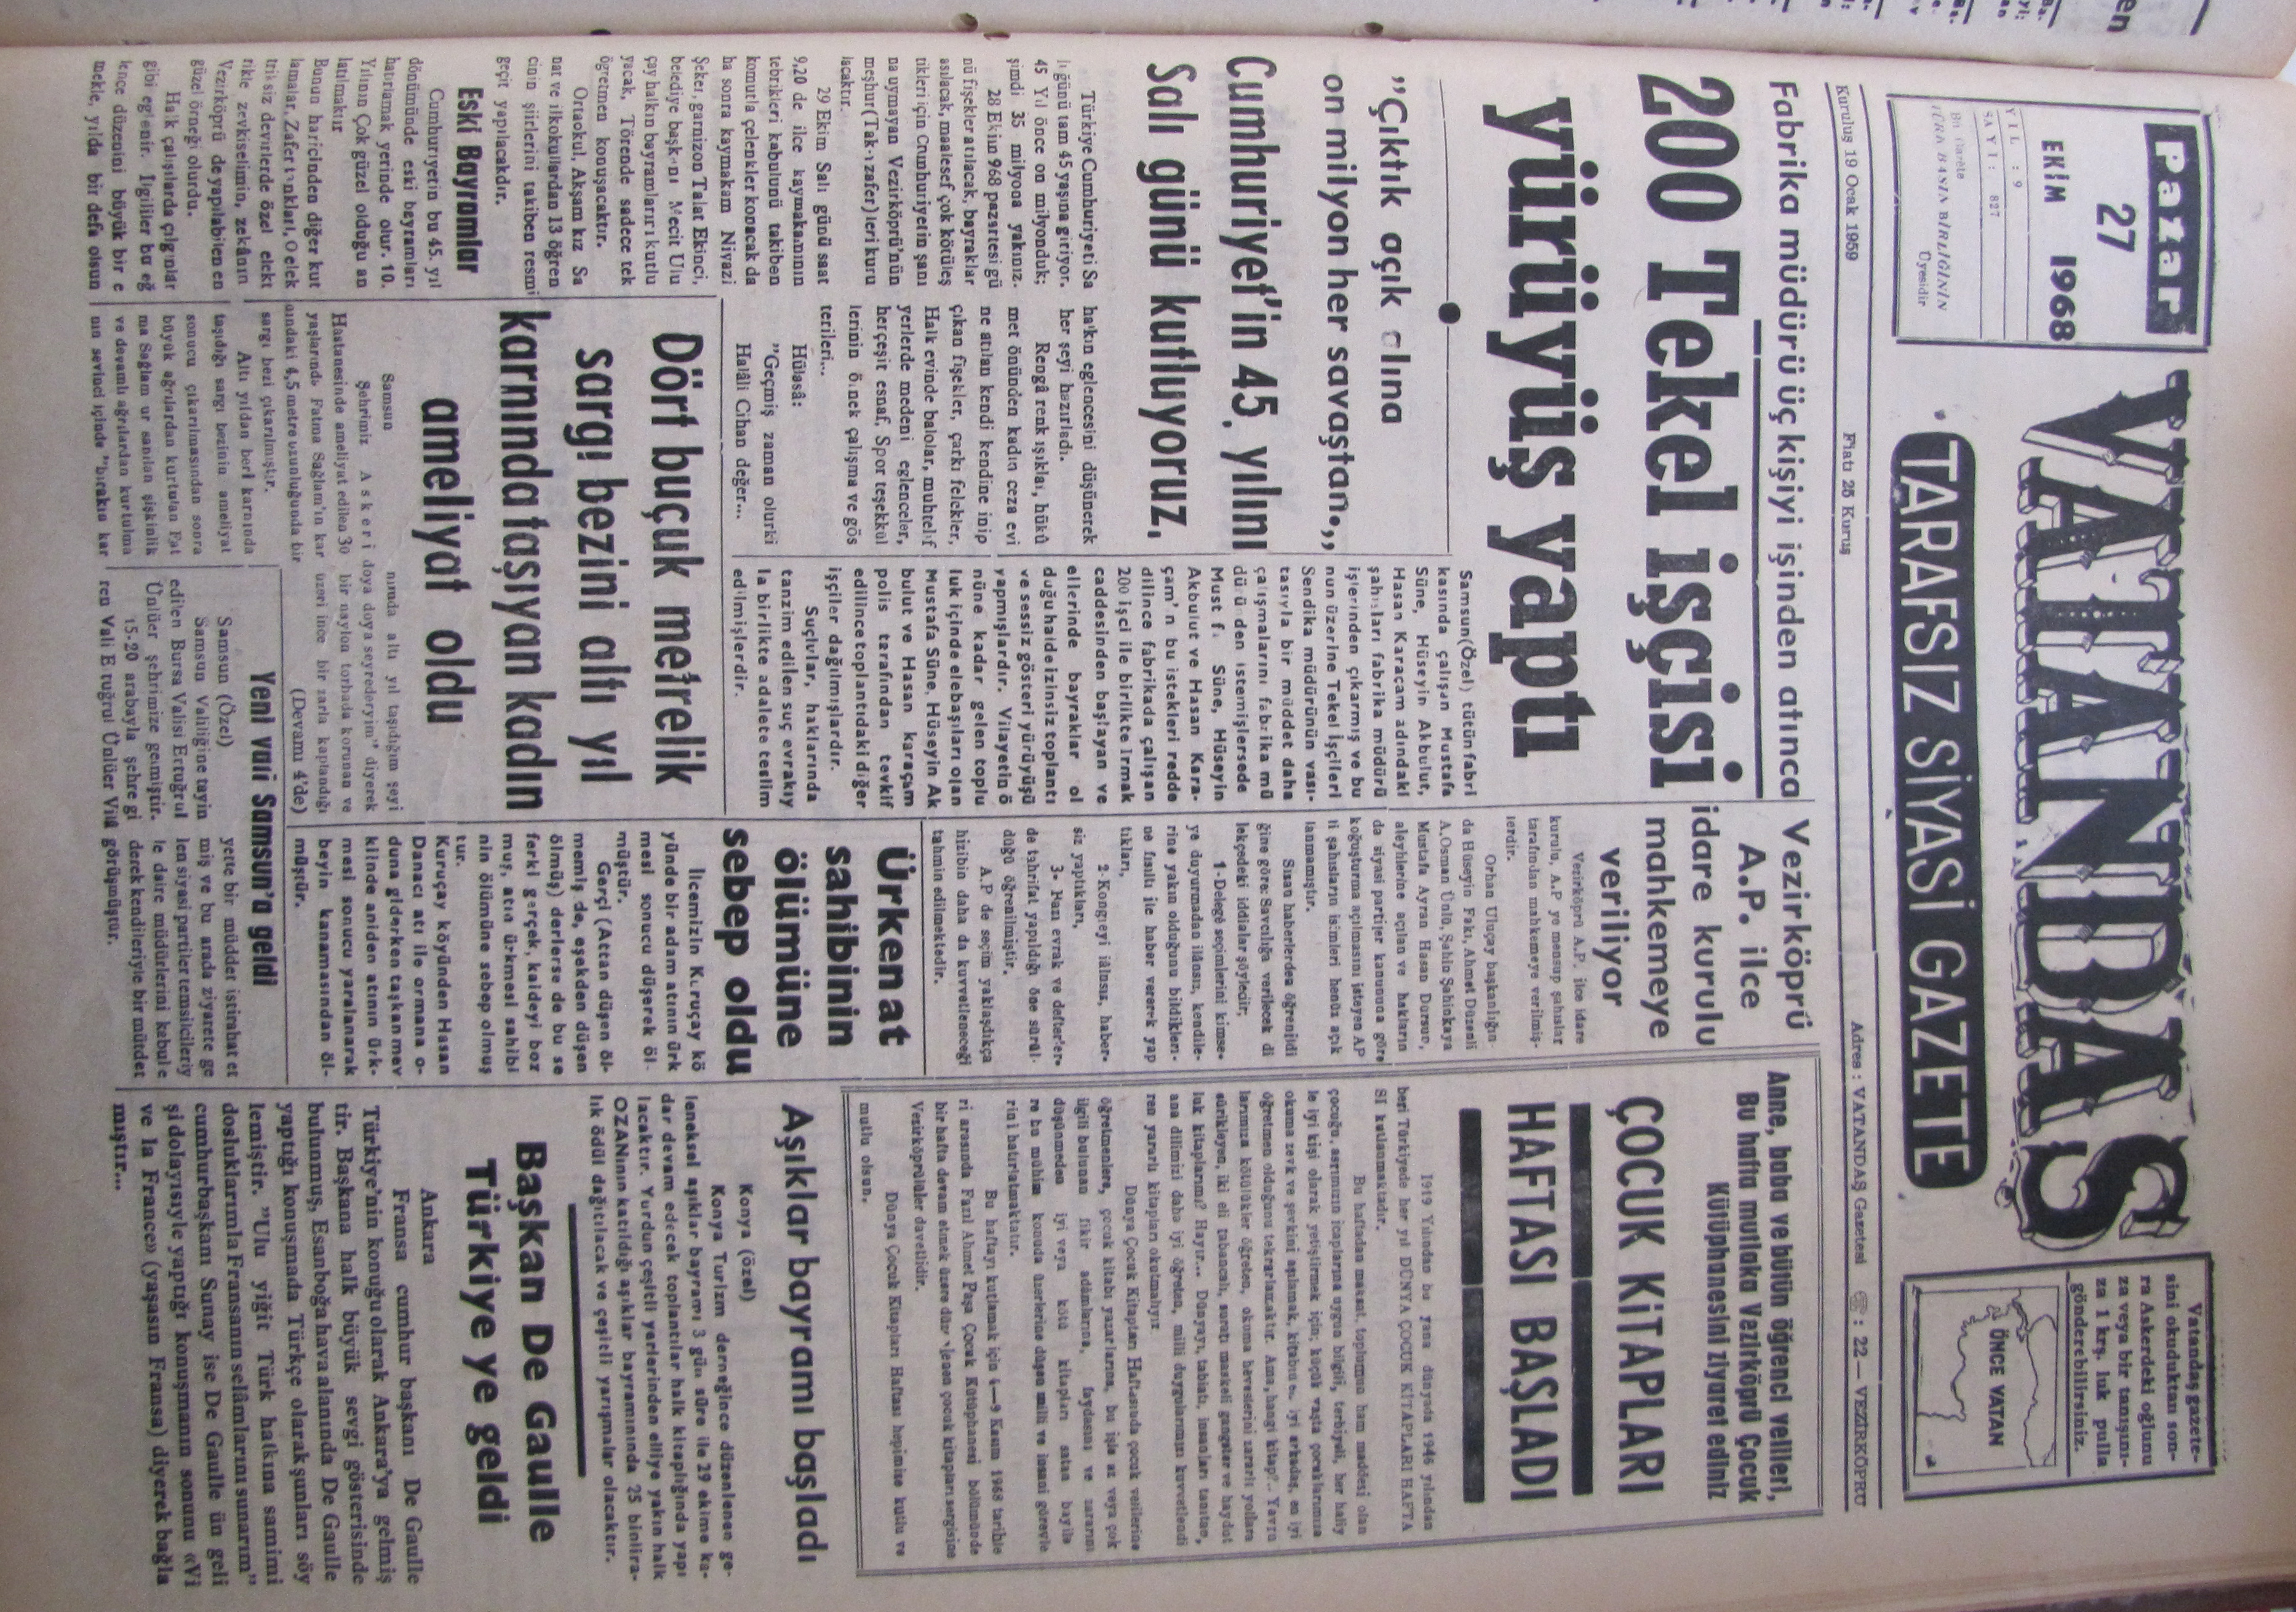 Fabrika müdürü üç kişiyi işten atınca 200 Tekel İşçisi Yürüyüş Yaptı 27 Ekim 1968 Pazar